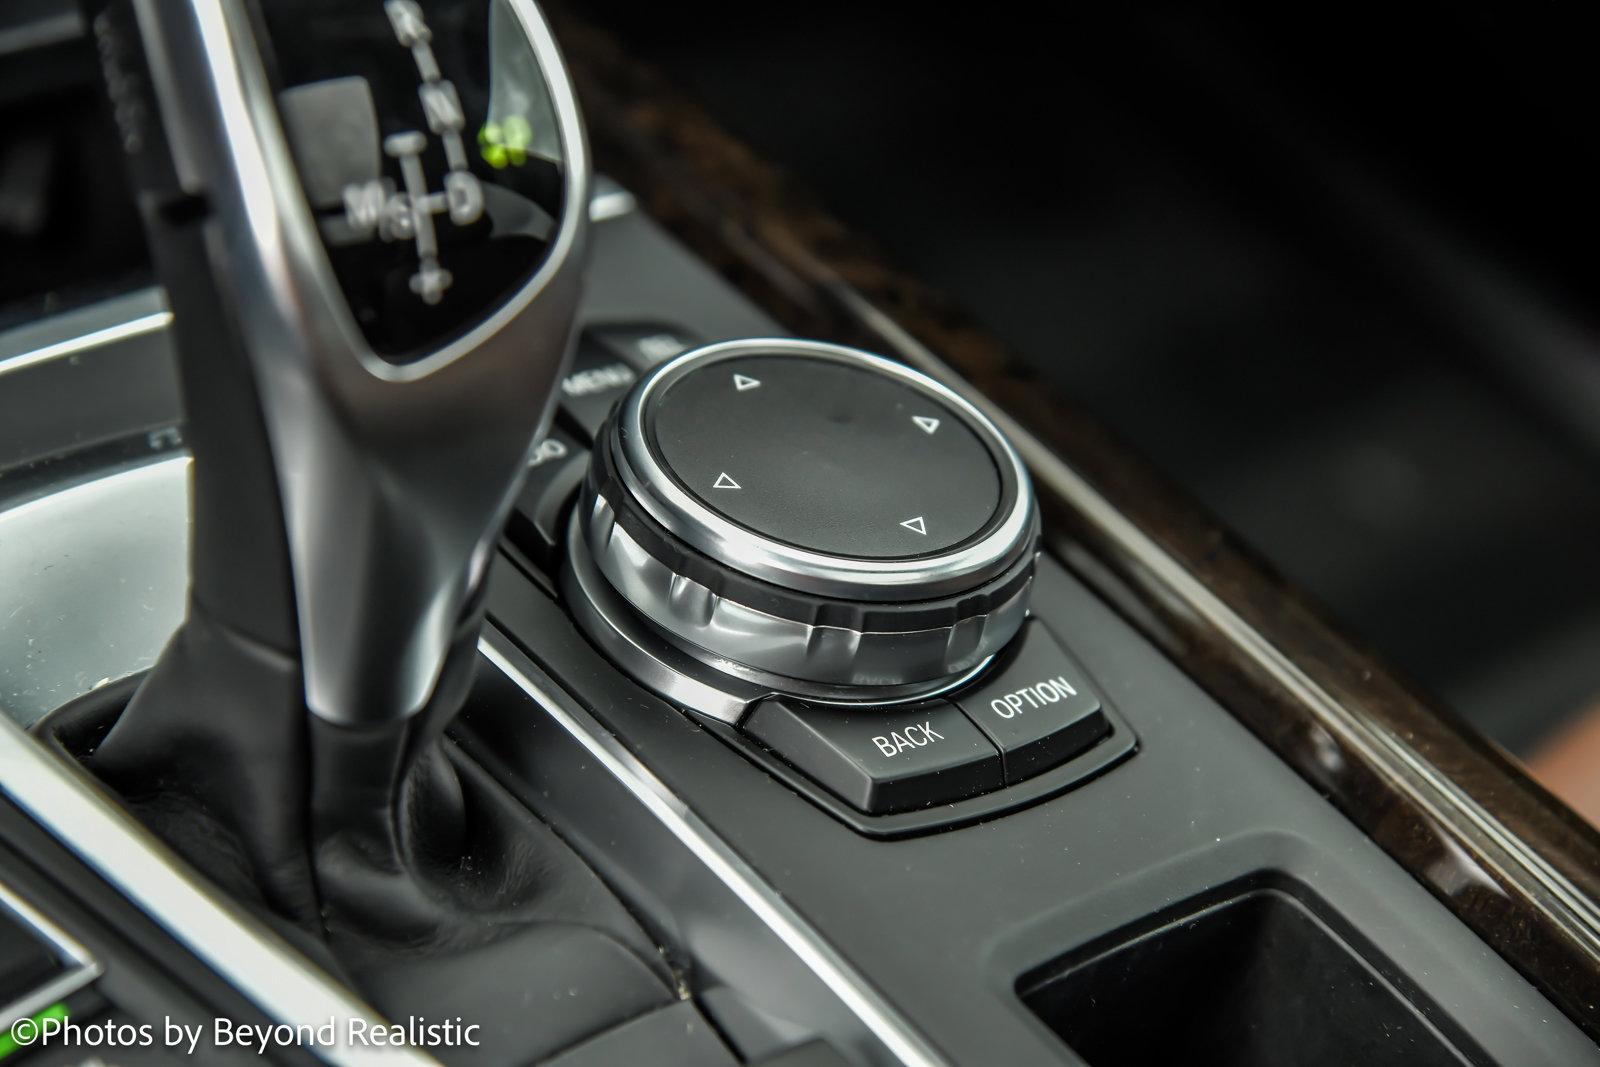 Used 2016 BMW X5 xDrive35i, M Sport, Premium Pkg | Downers Grove, IL